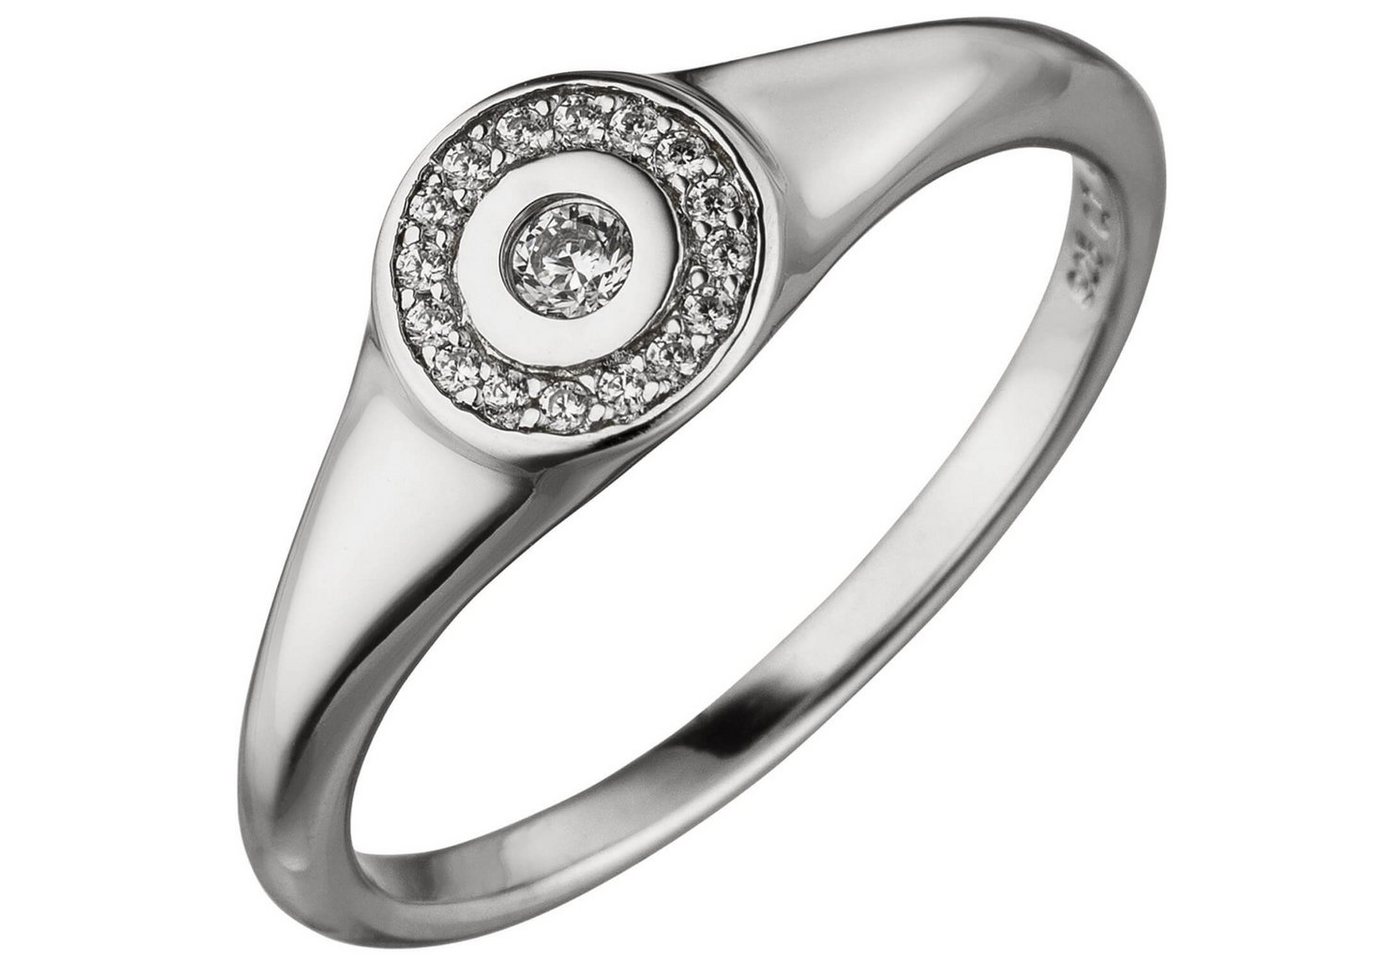 Schmuck Krone Silberring Ring mit 17 Zirkonia weiß B 7,1mm 925 Silber rhodiniert Fingerschmuck Fingerring, Silber 925 von Schmuck Krone